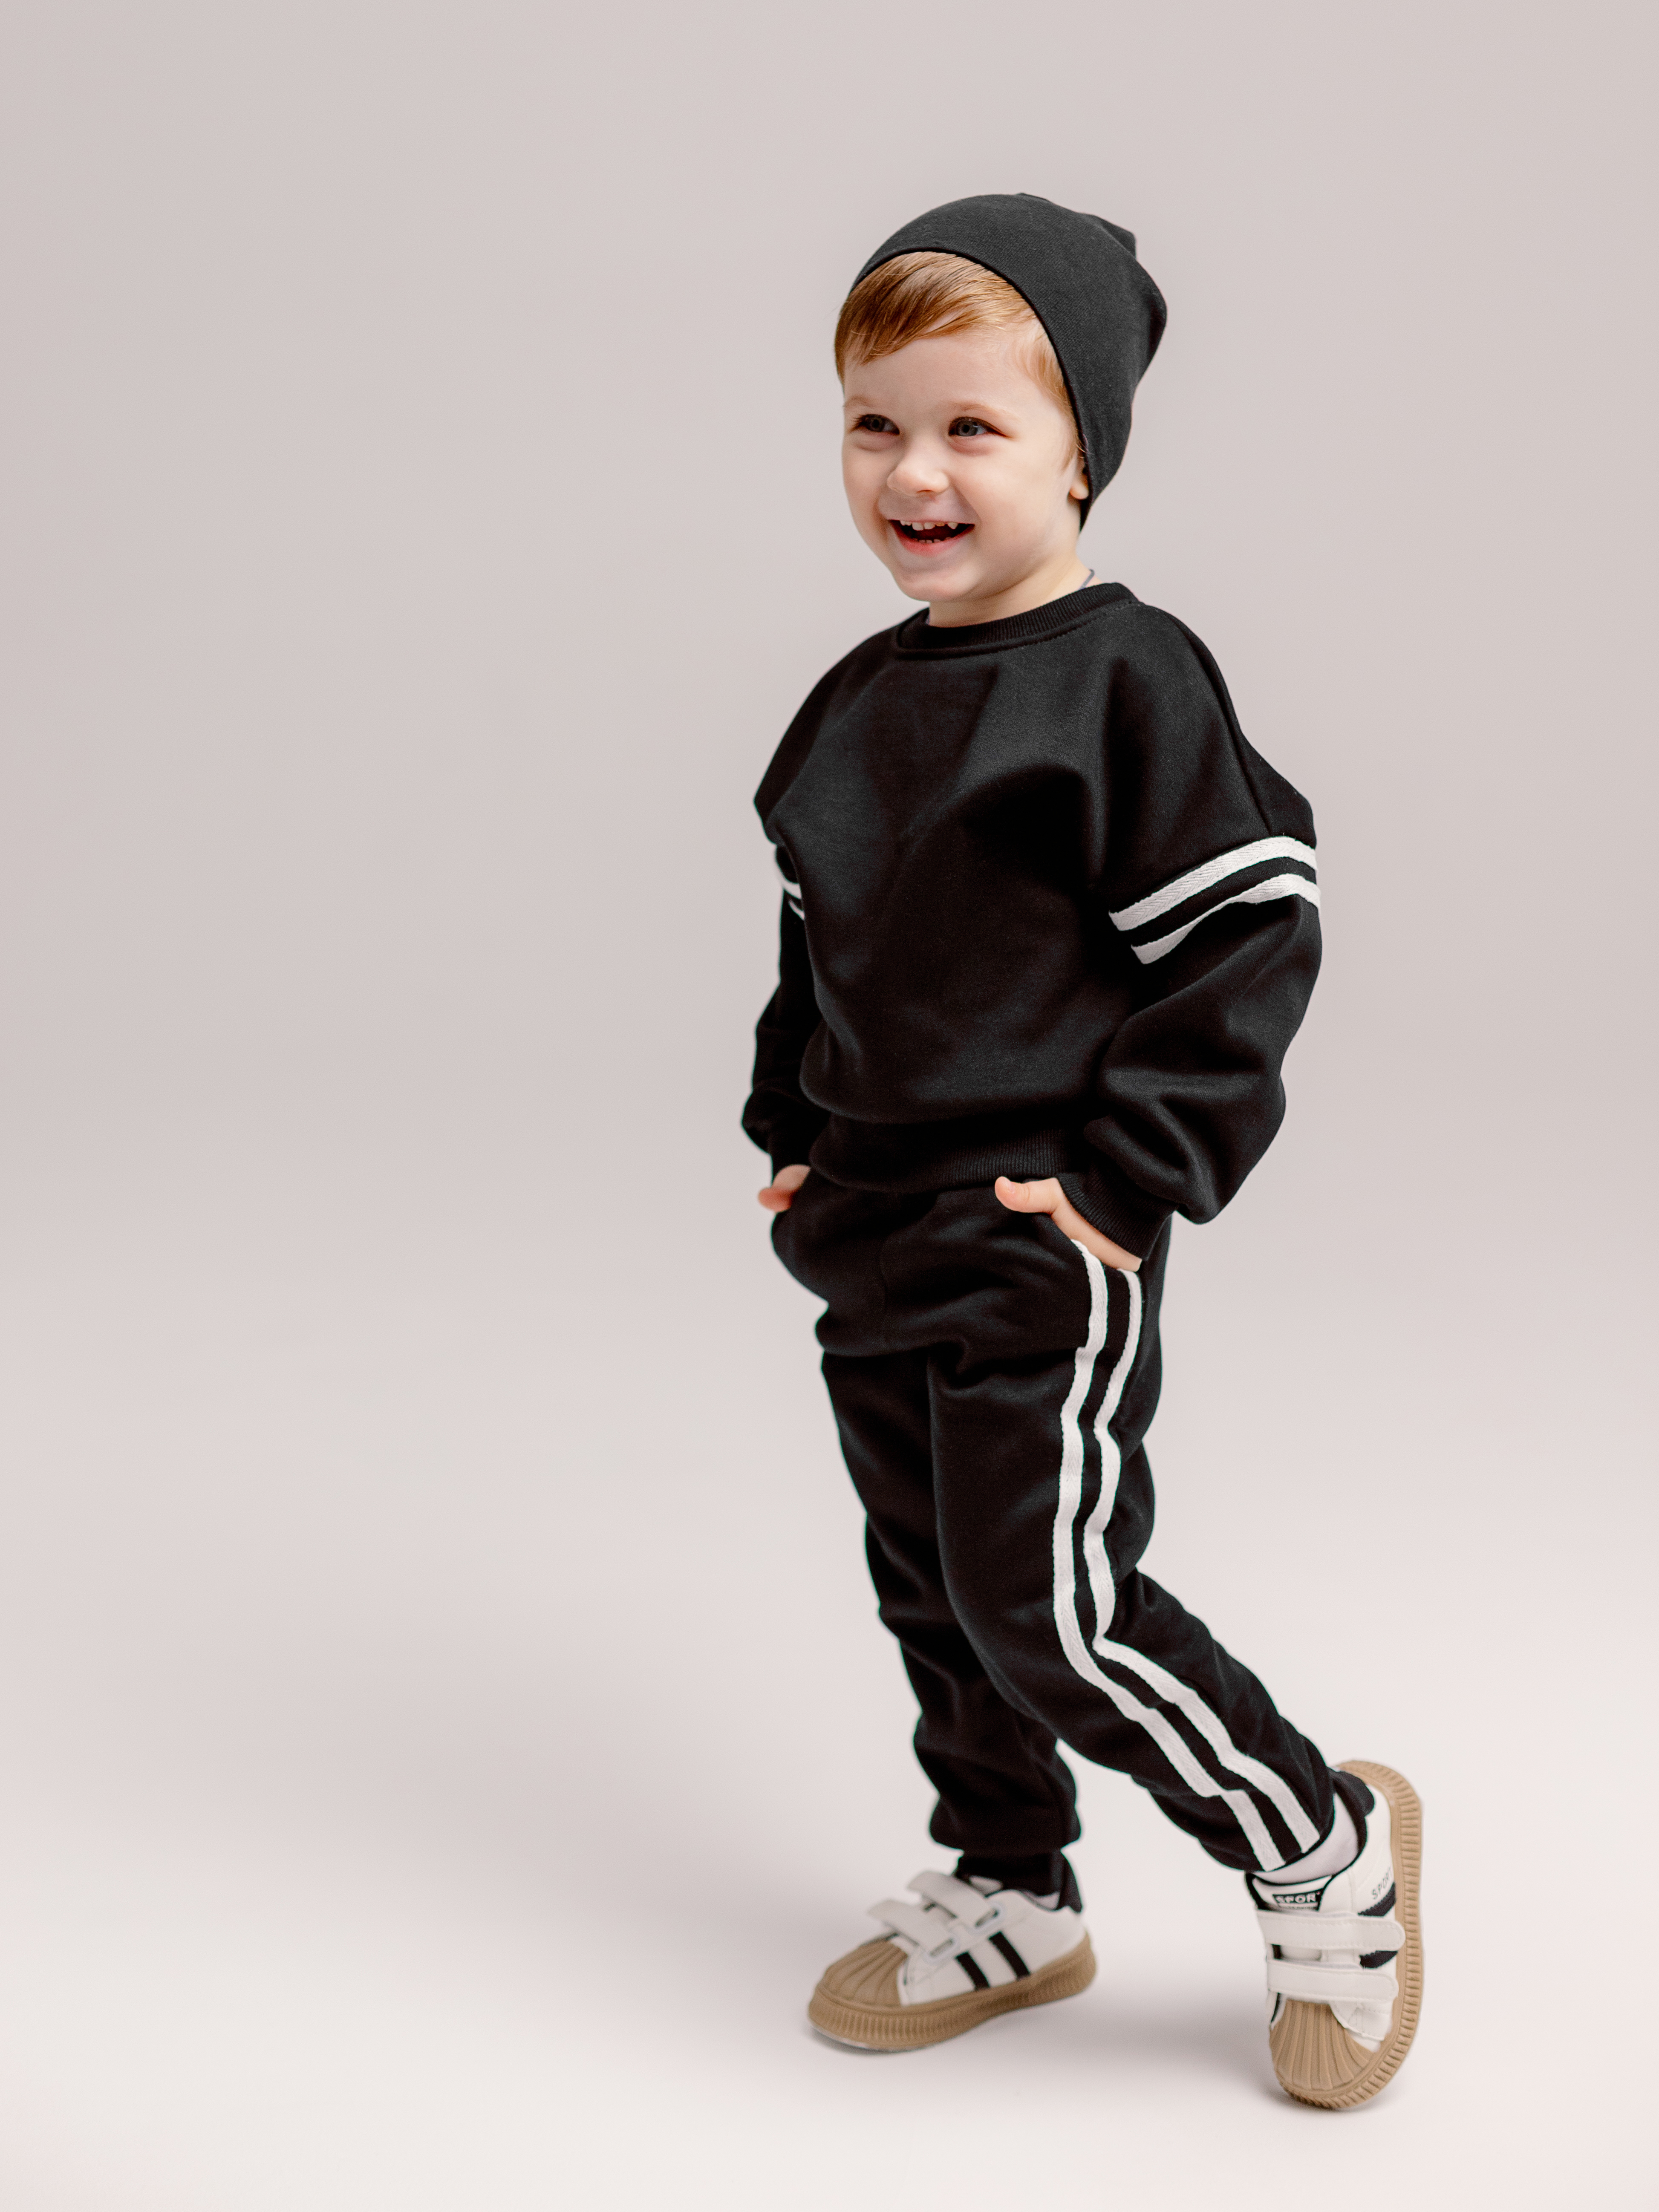 Спортивный костюм BabyDreams KS10/черный костюм для малыша - фото 8